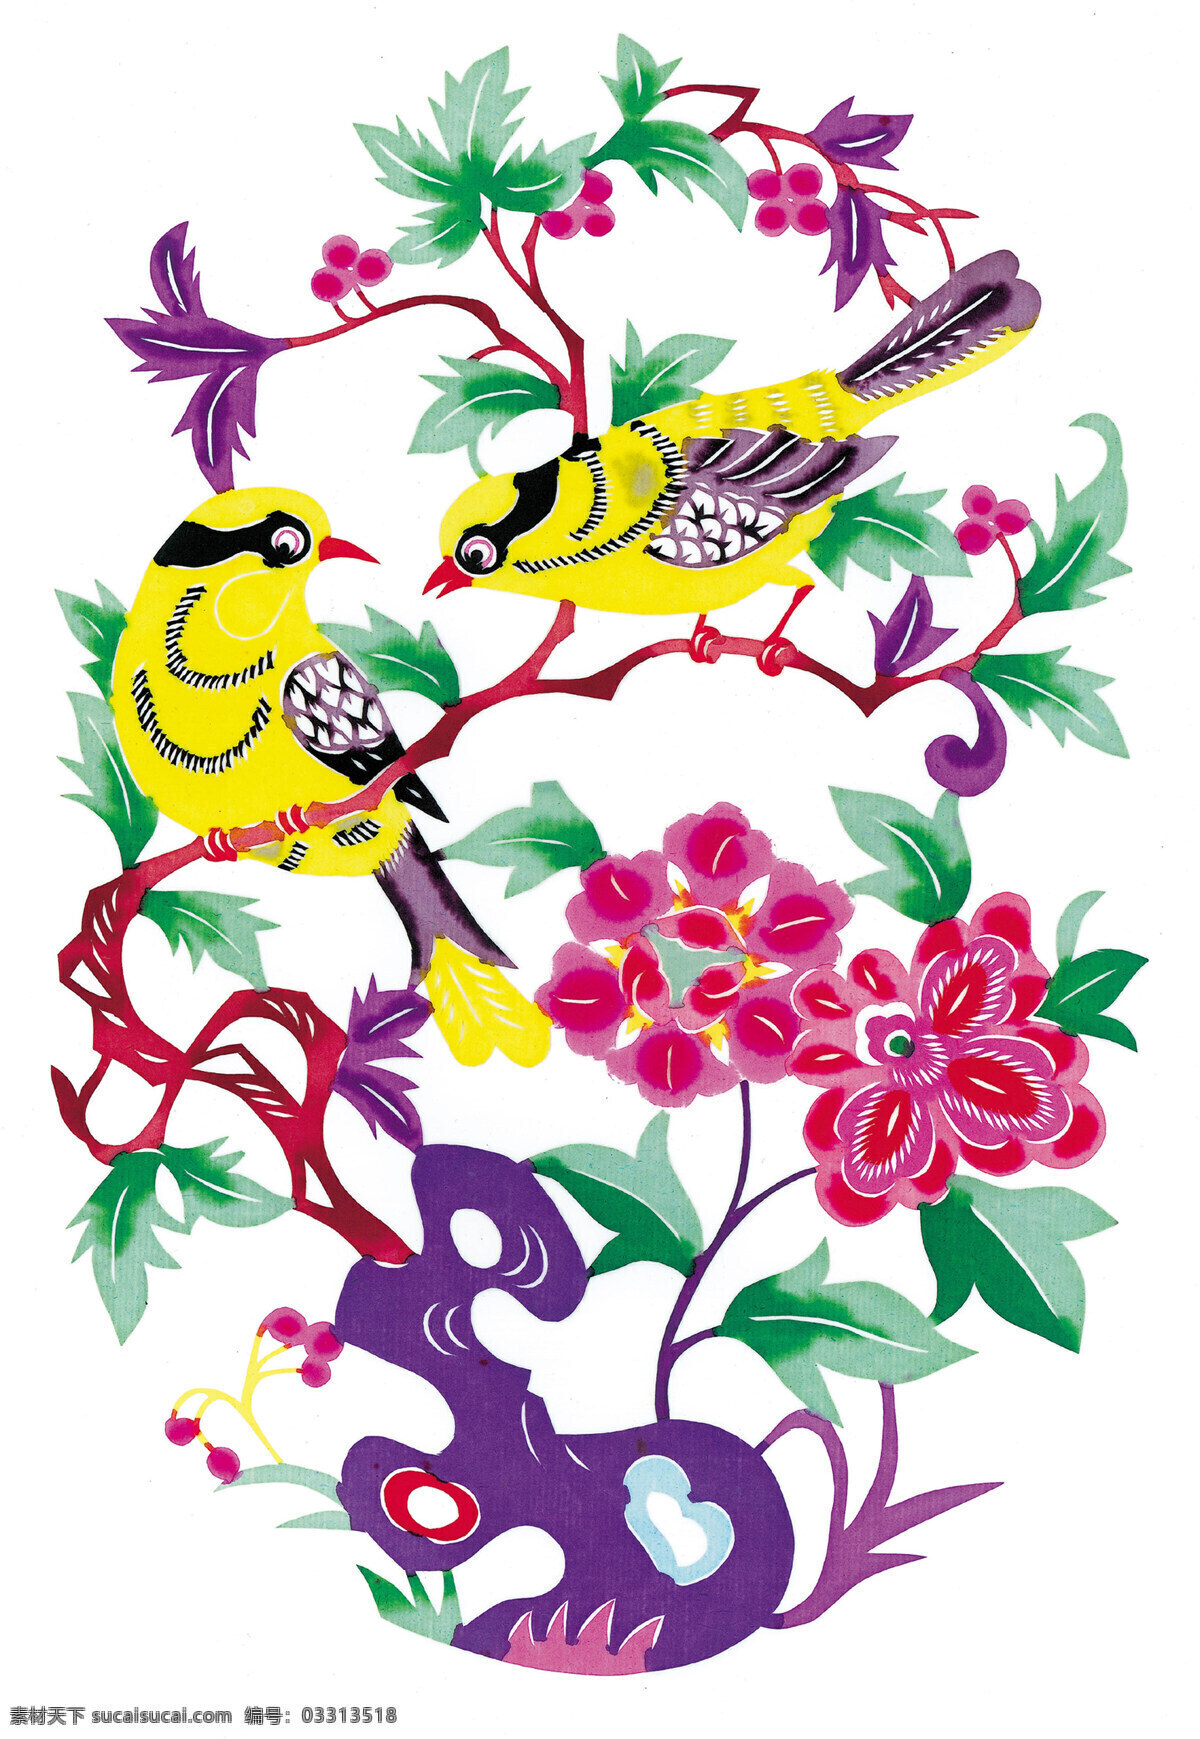 黄鹂 鲜花 剪纸 中国 风 古典 花纹 传统 图案 剪纸艺术 民间剪纸艺术 民间画 文化艺术